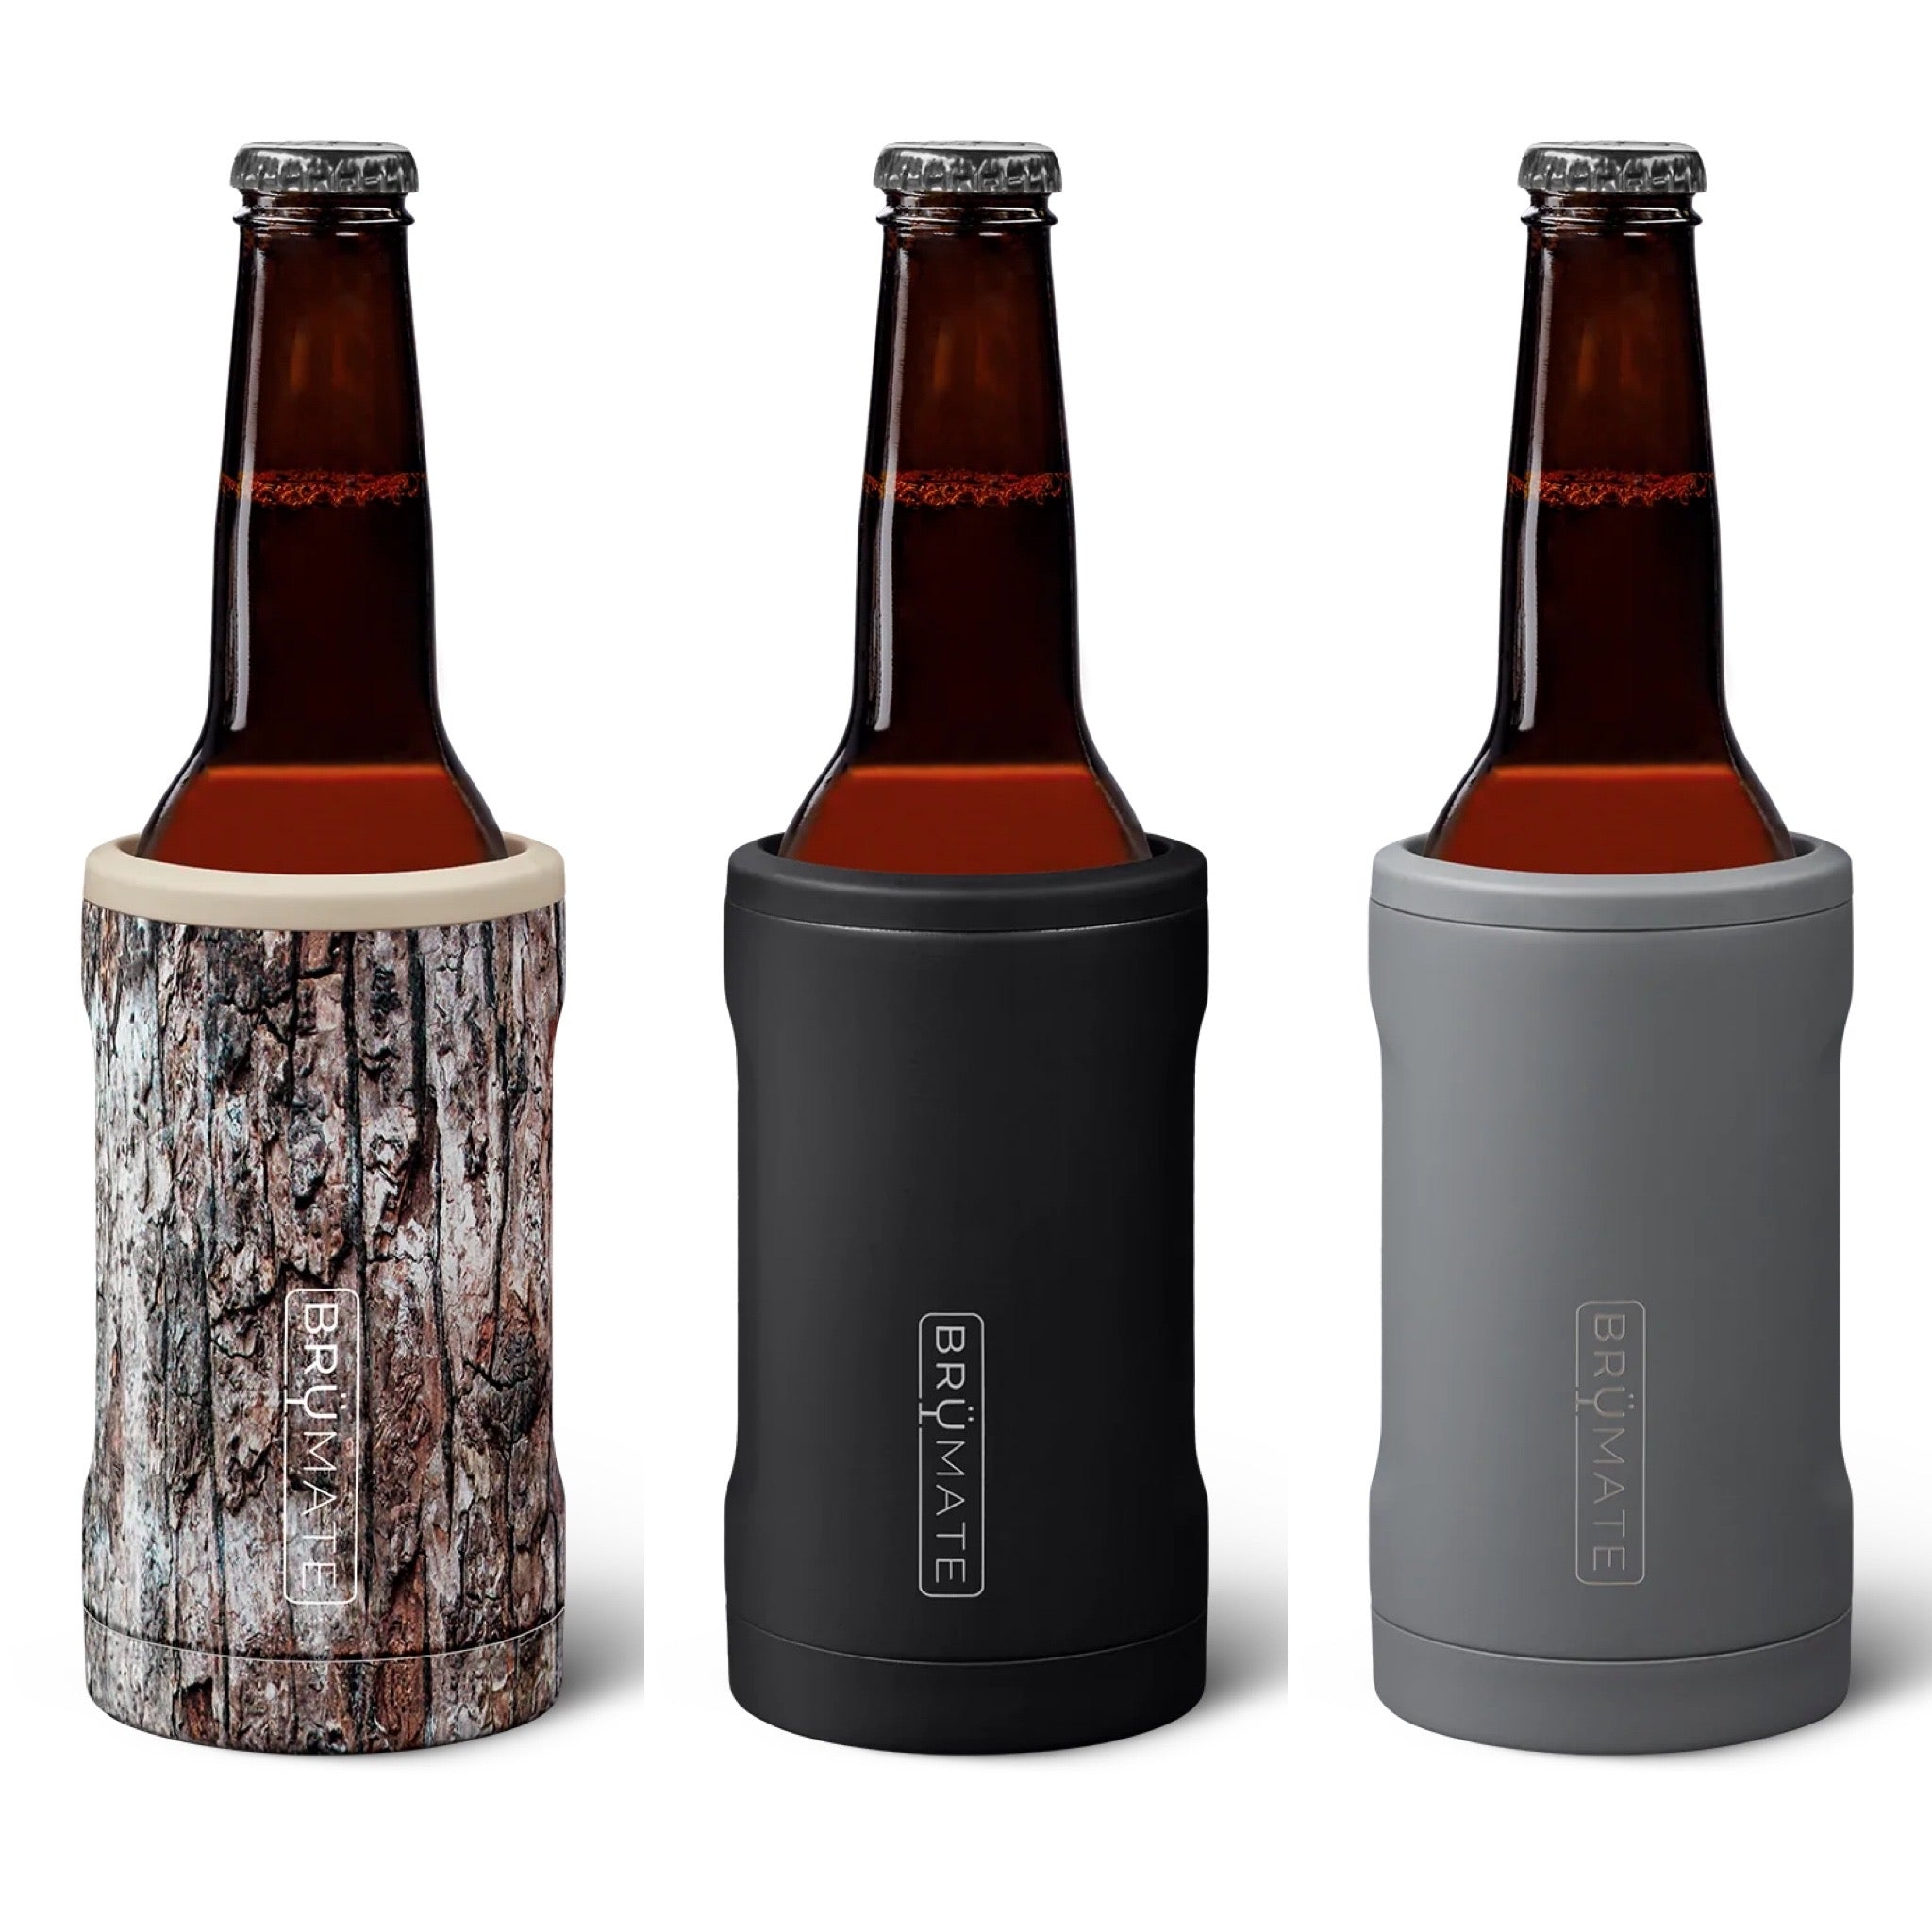 BruMate Hopsulator Insulated Holder for12oz Glass Bottles